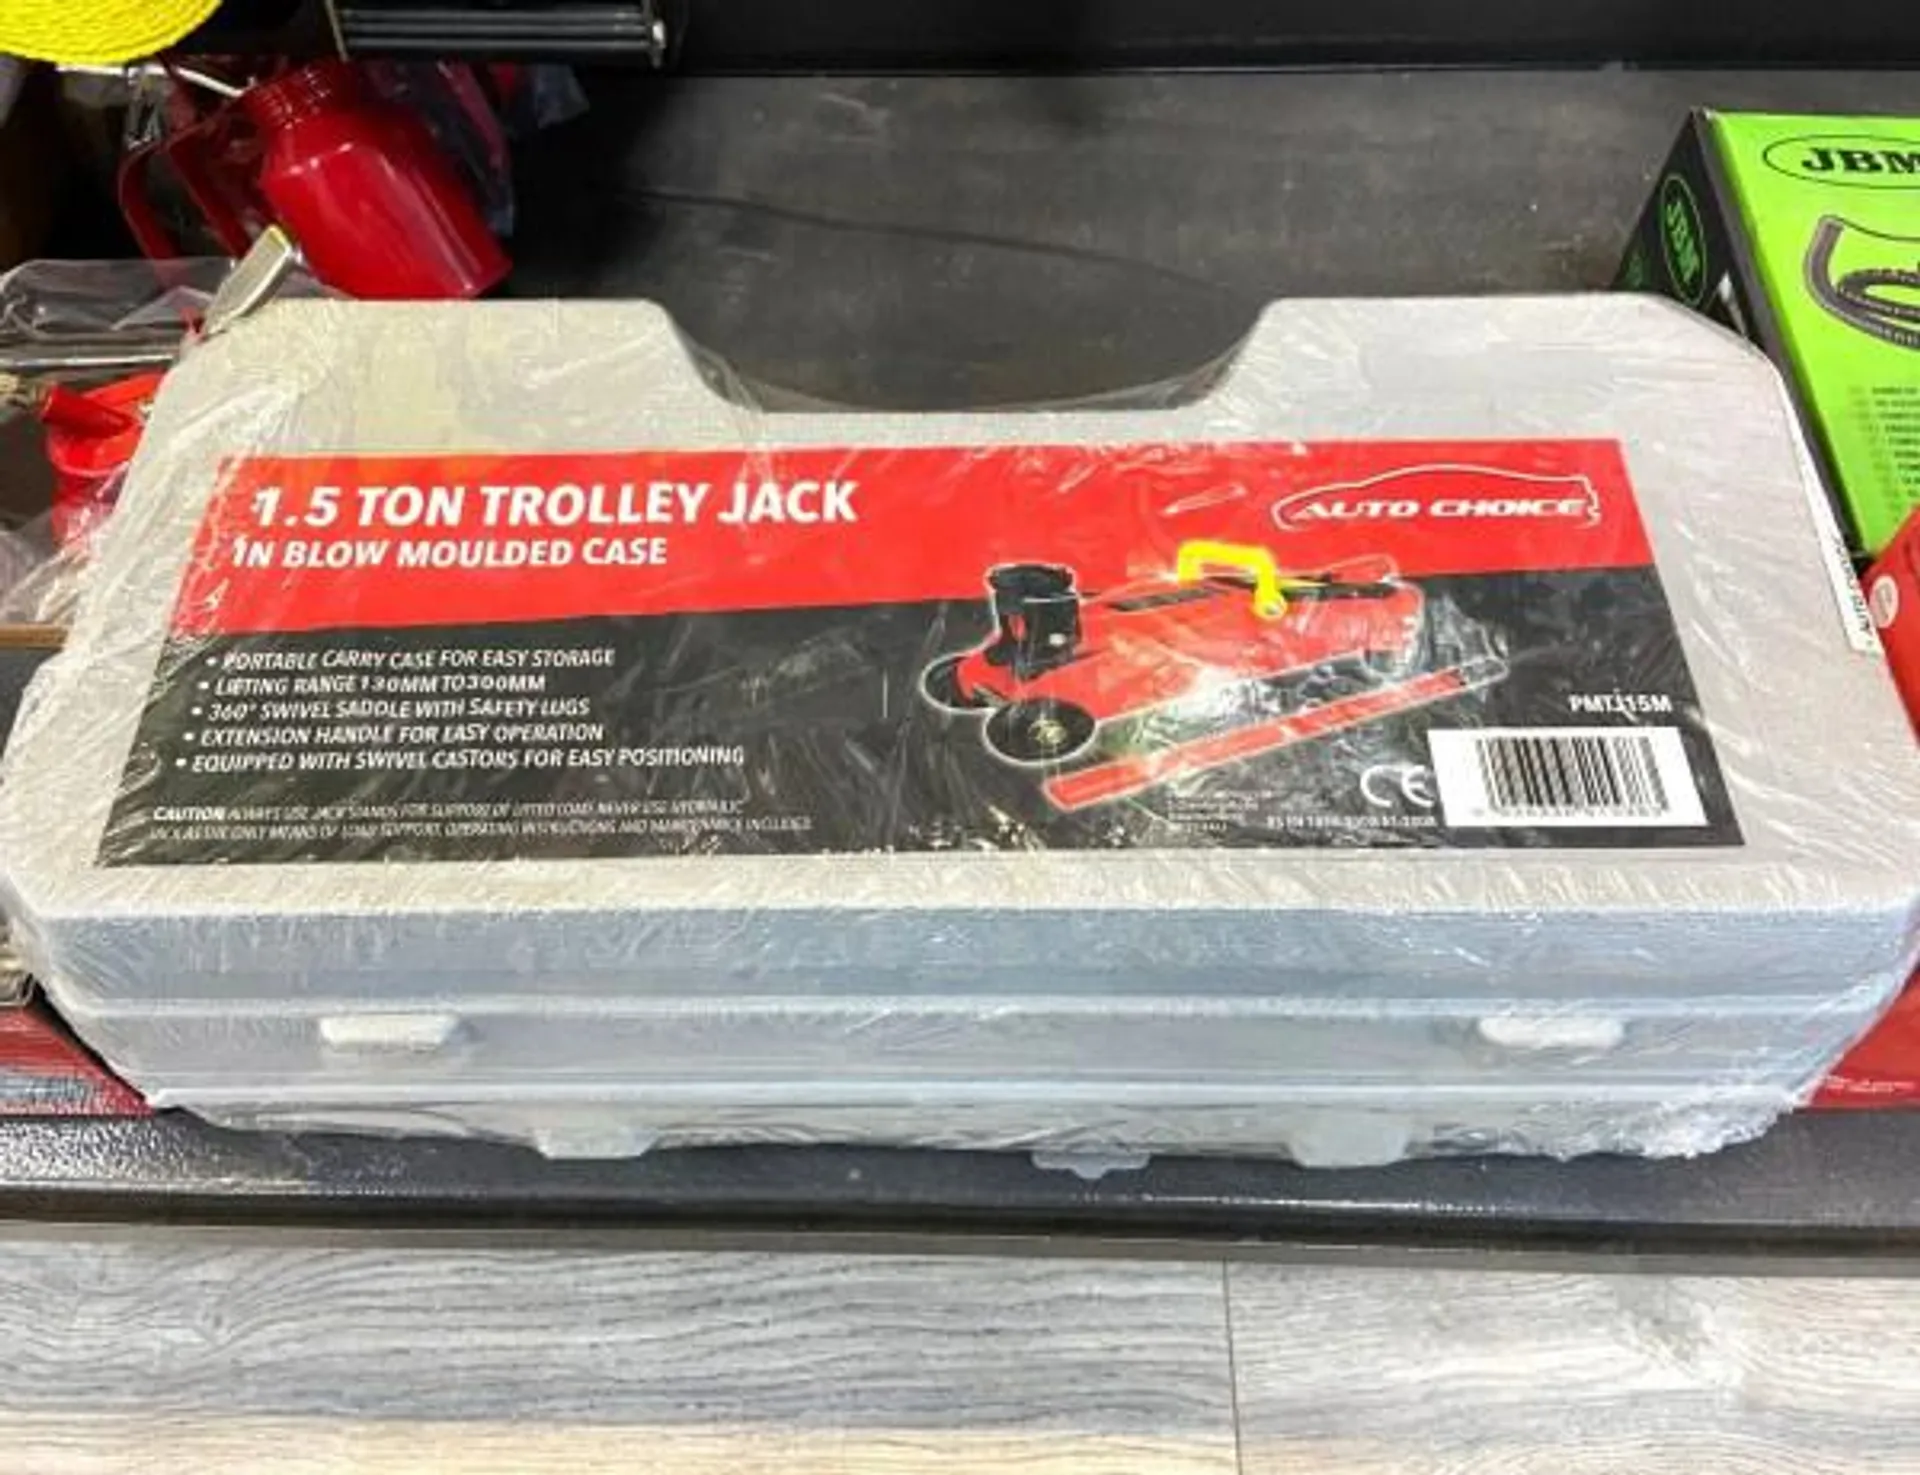 1.5 Ton Car Trolley Jack